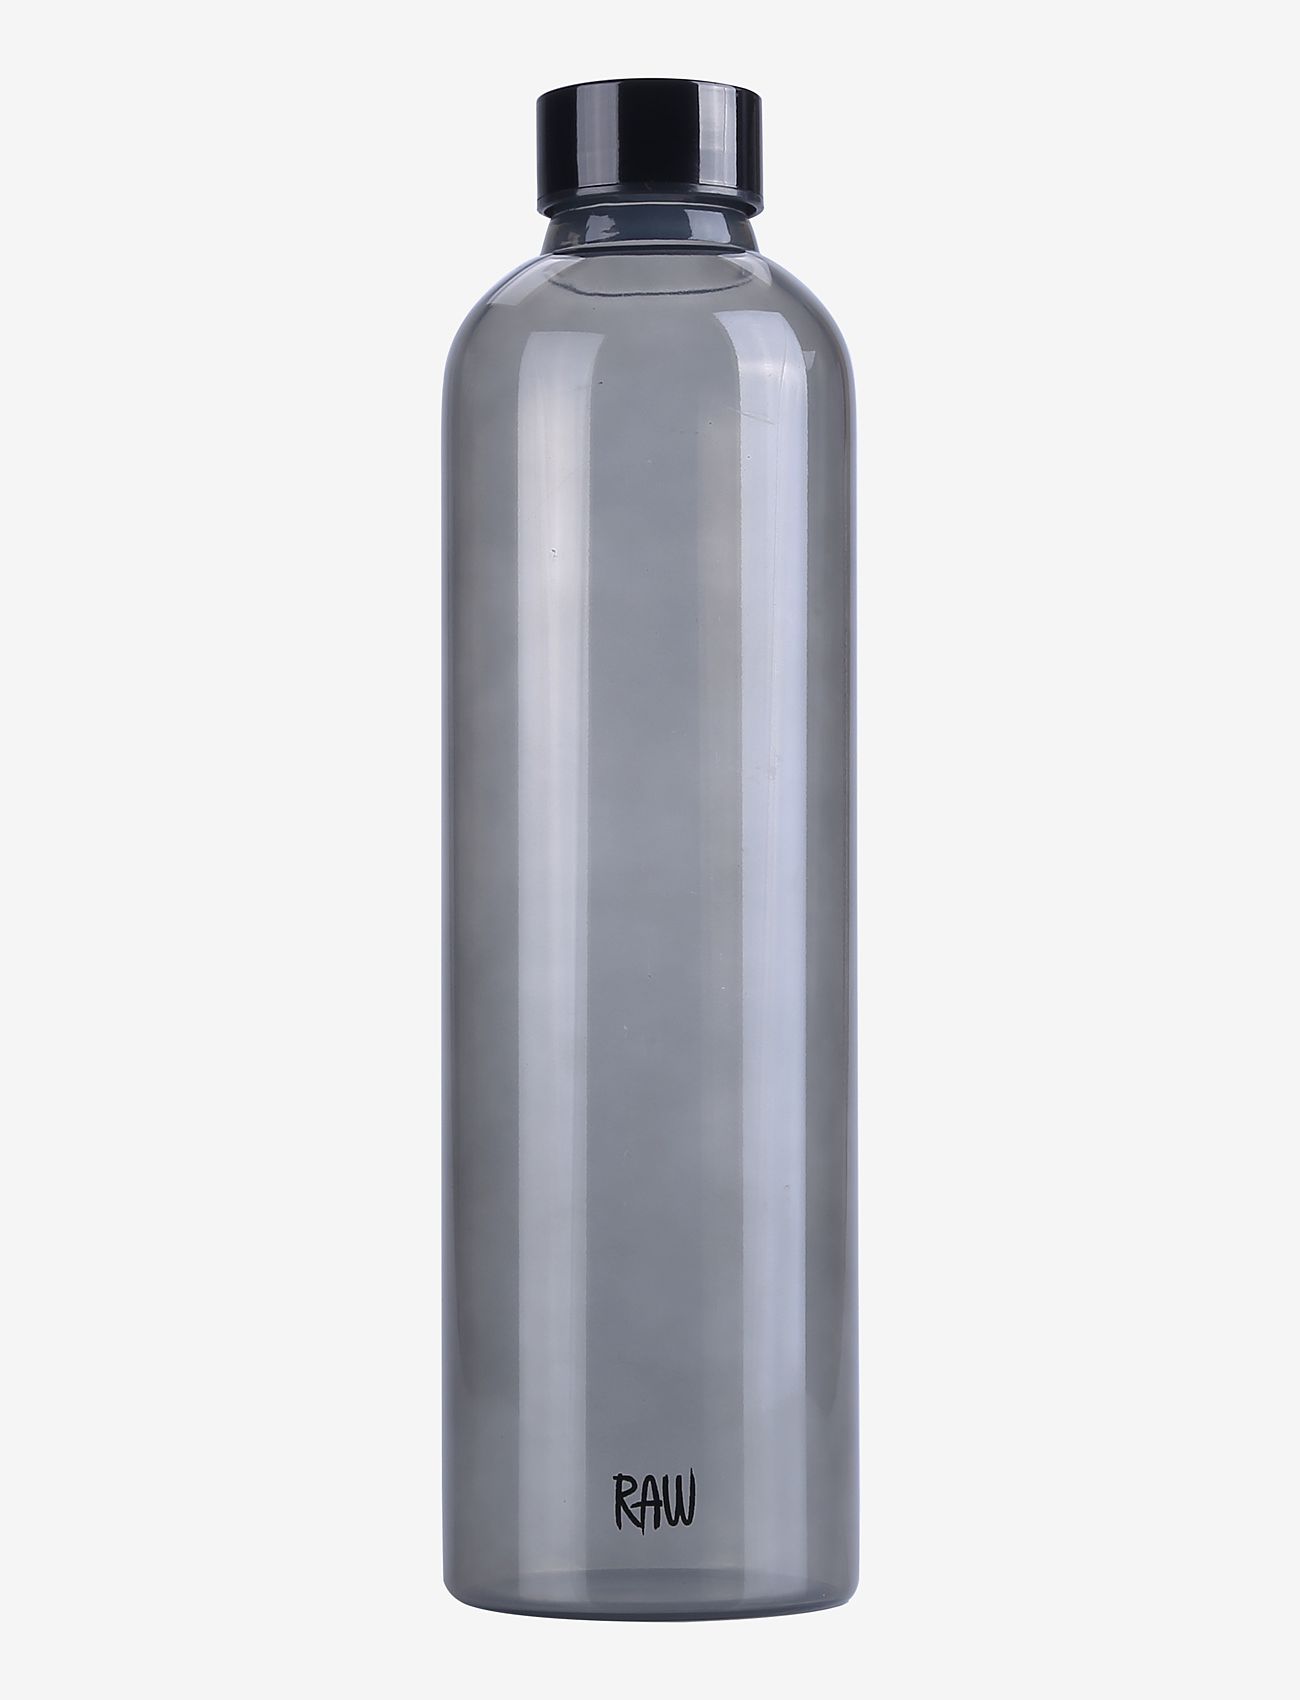 Aida - RAW Glass & storage smoke - decanter glass bottle - lowest prices - smoke - 0